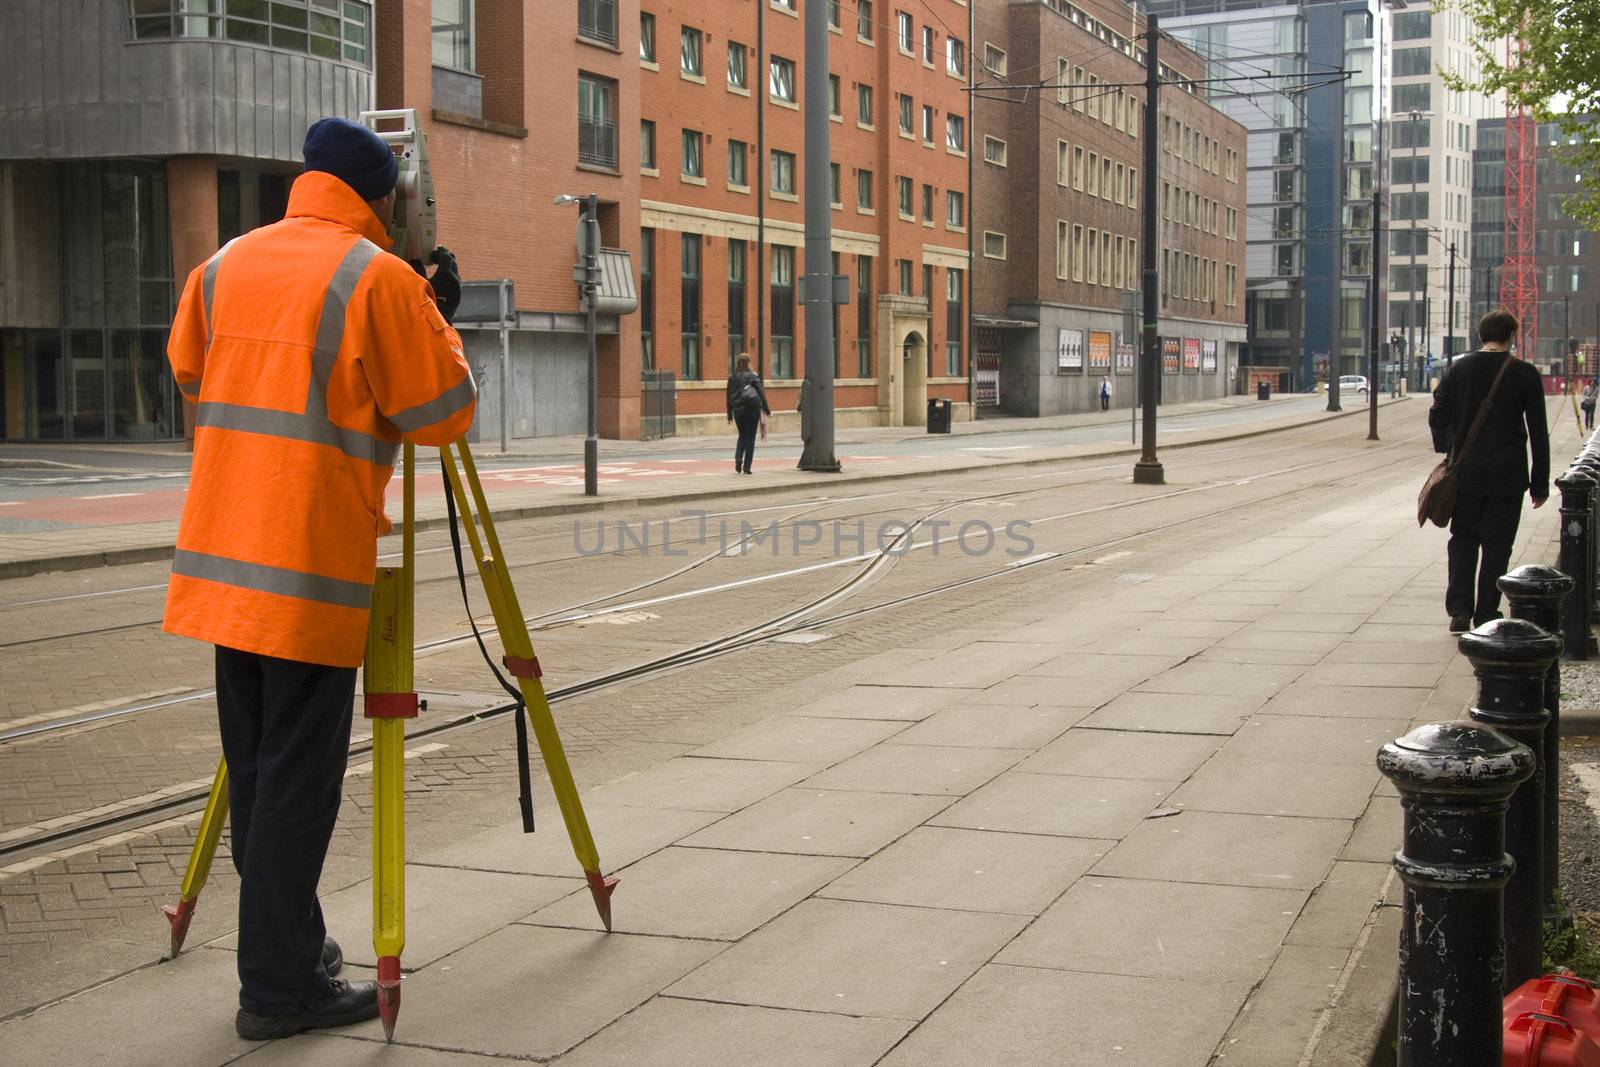 Surveyor taking measure in Manchester, UK